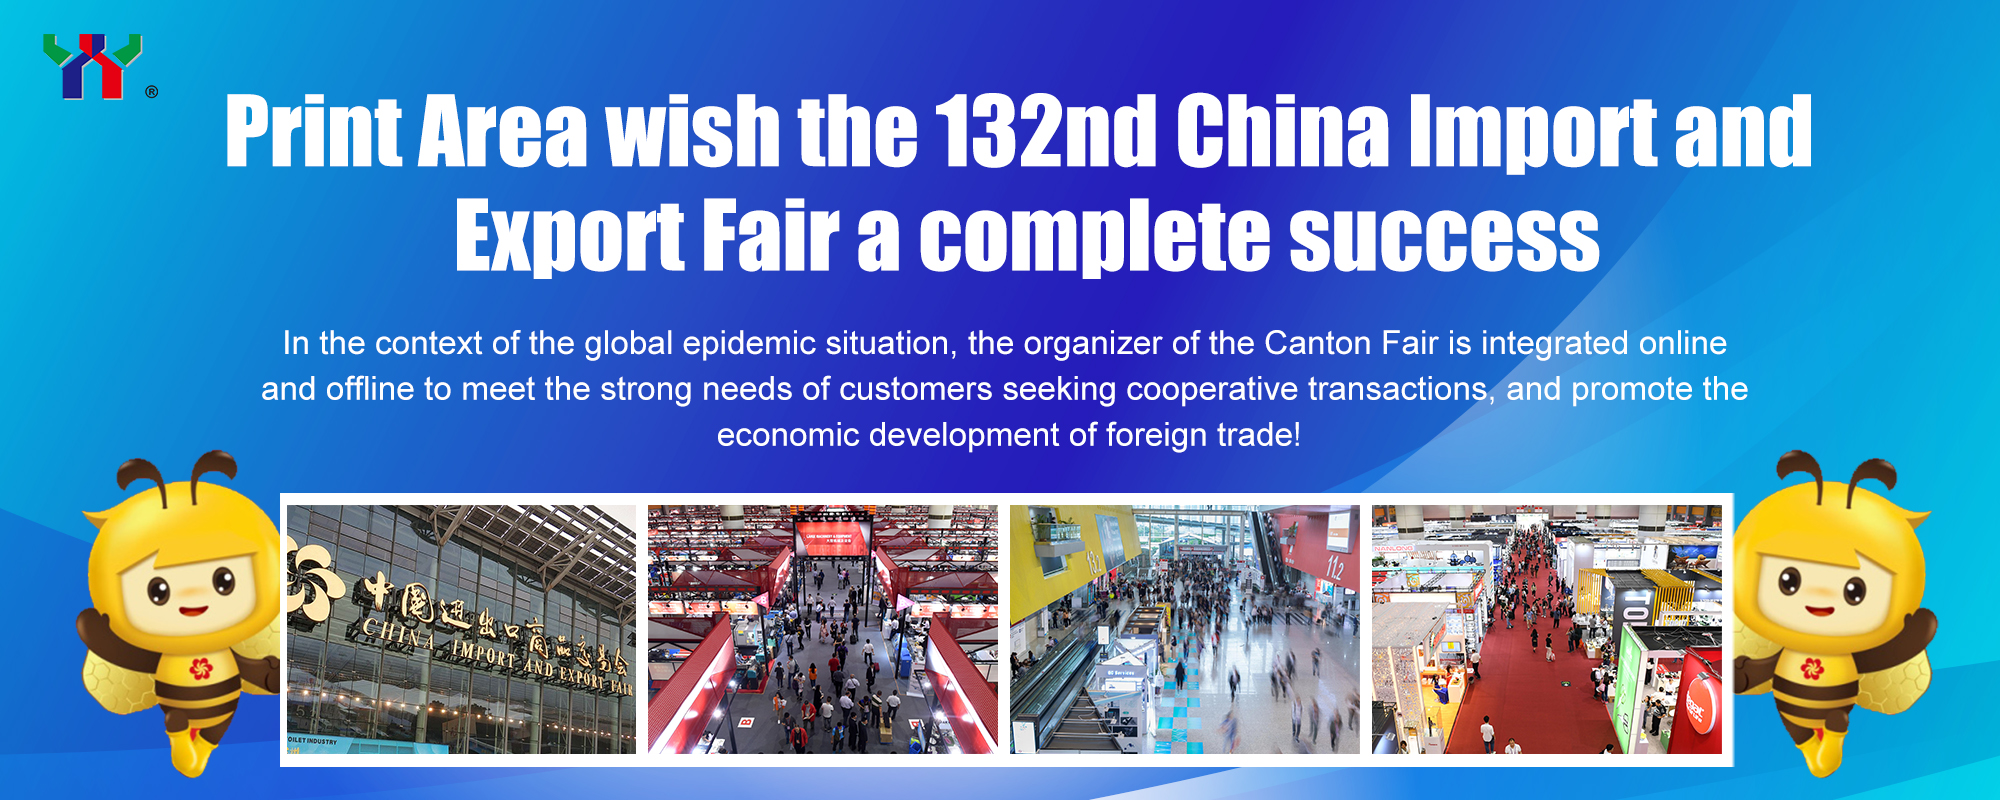 Print Area souhaite au 132e Salon de l'importation et de l'exportation de Chine un succès total